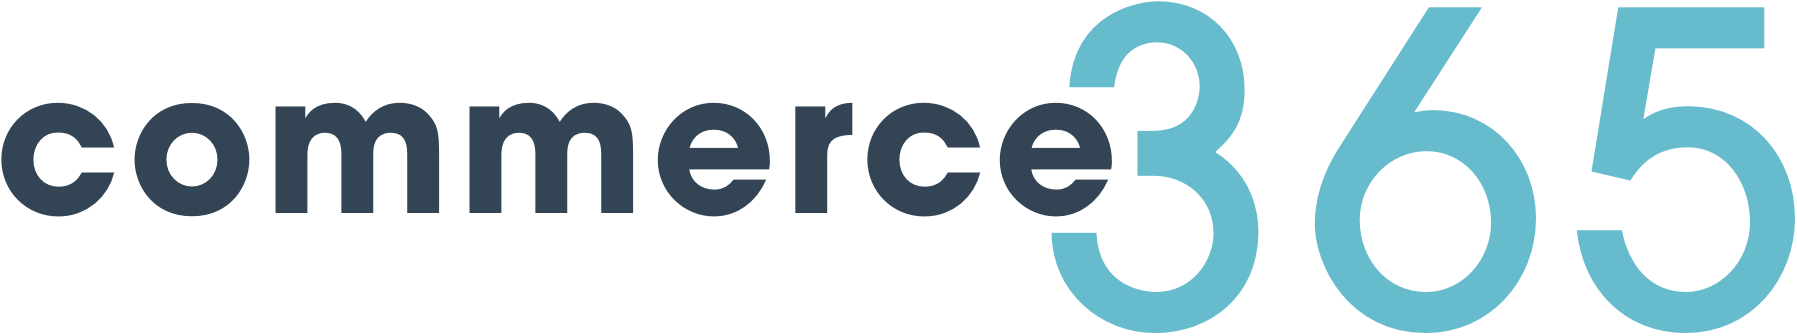 commerce365 logo